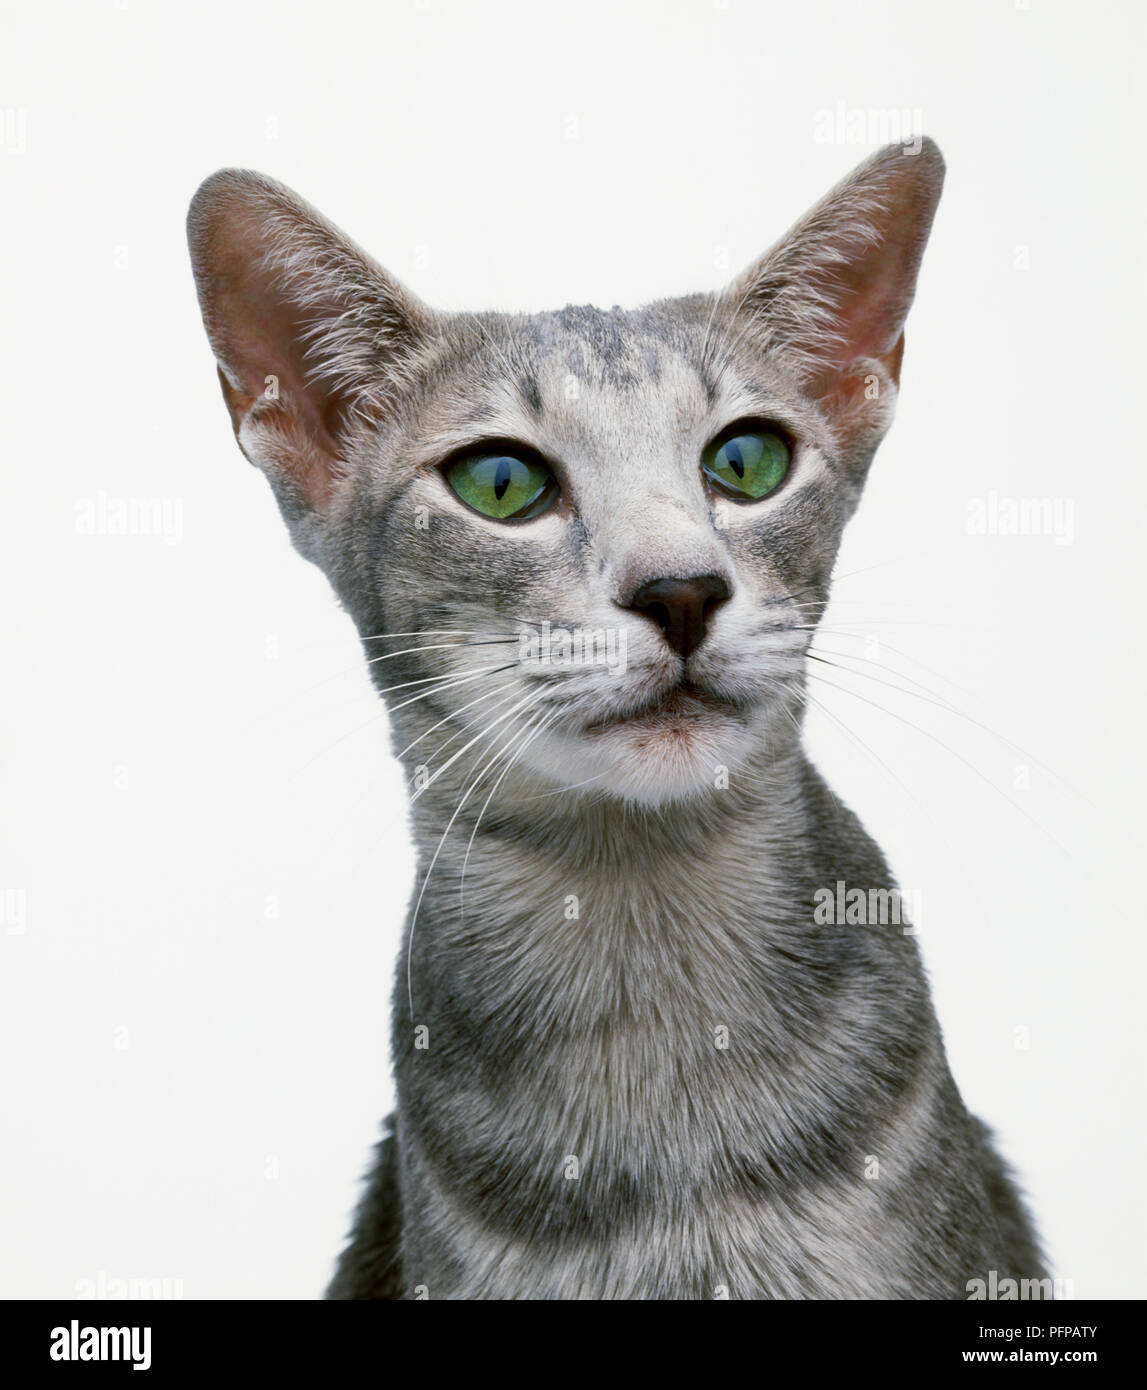 Oriental blue shorthair gatto con gli occhi verdi, close-up Foto Stock